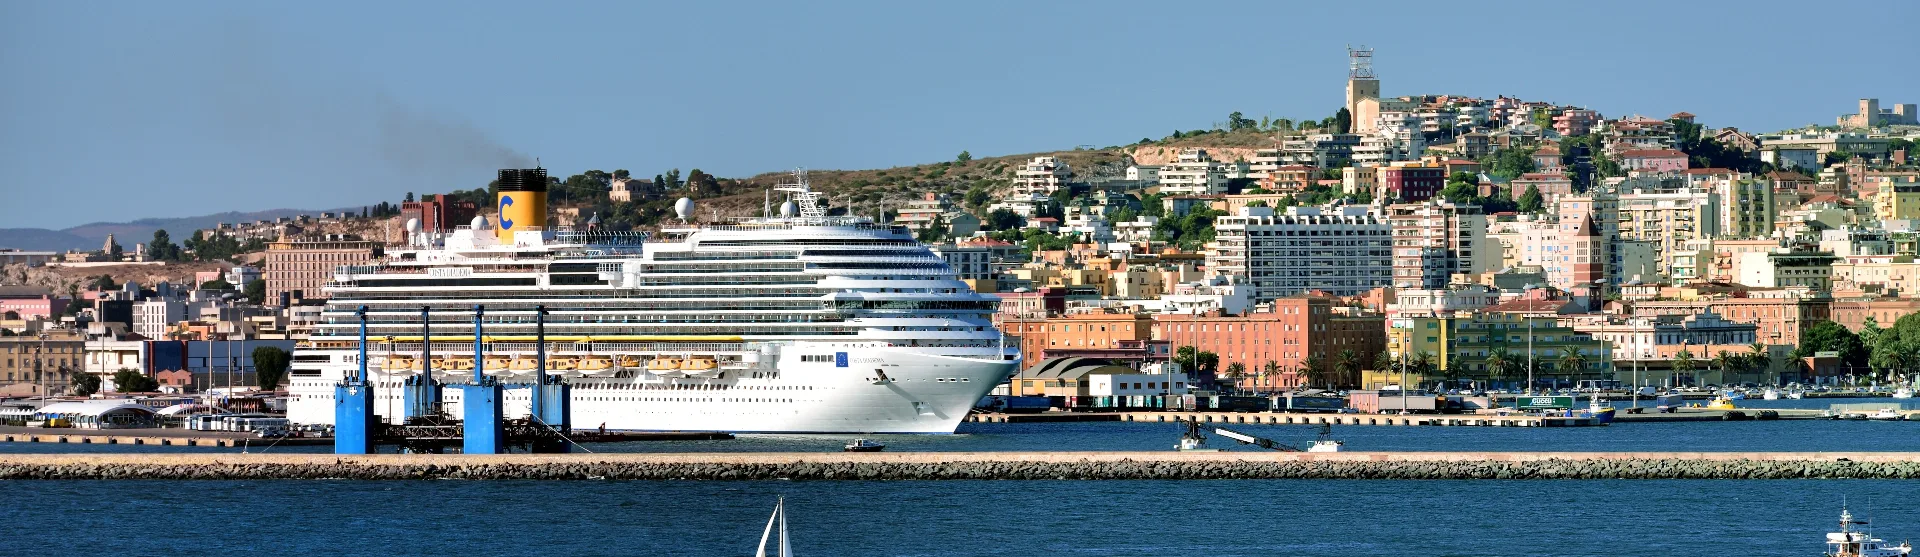 Costa Diadema - Costa Cruises